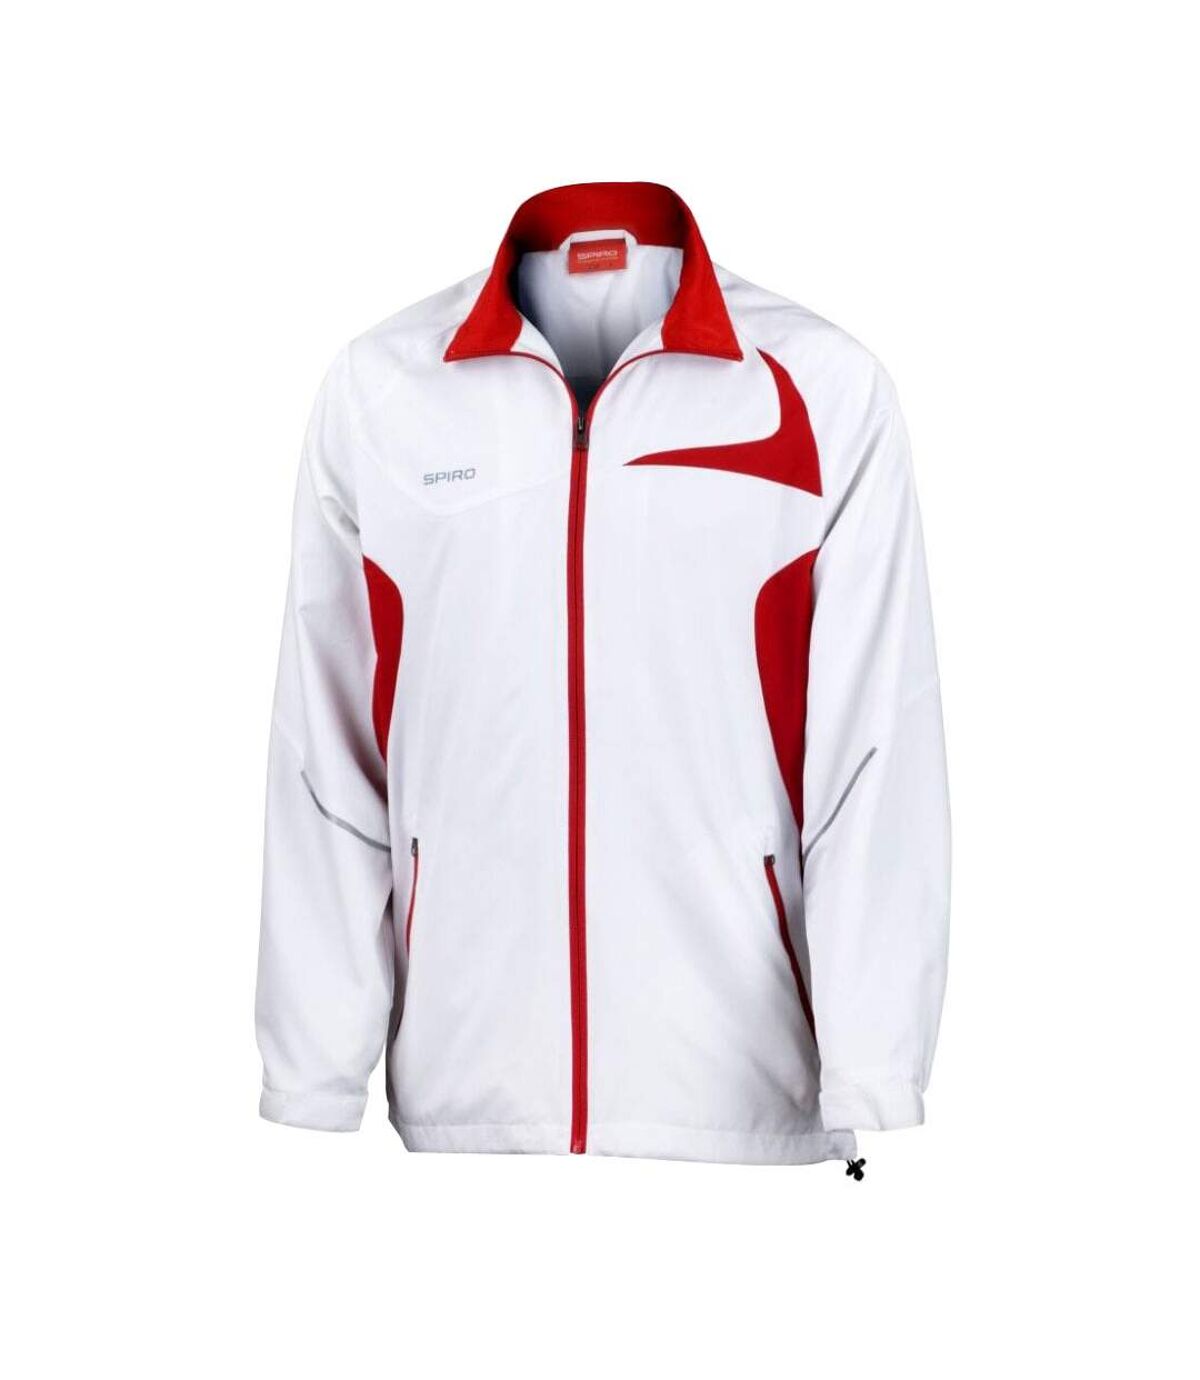 Spiro - Veste de sport légère hydrofuge - Homme (Blanc/Rouge) - UTRW1474